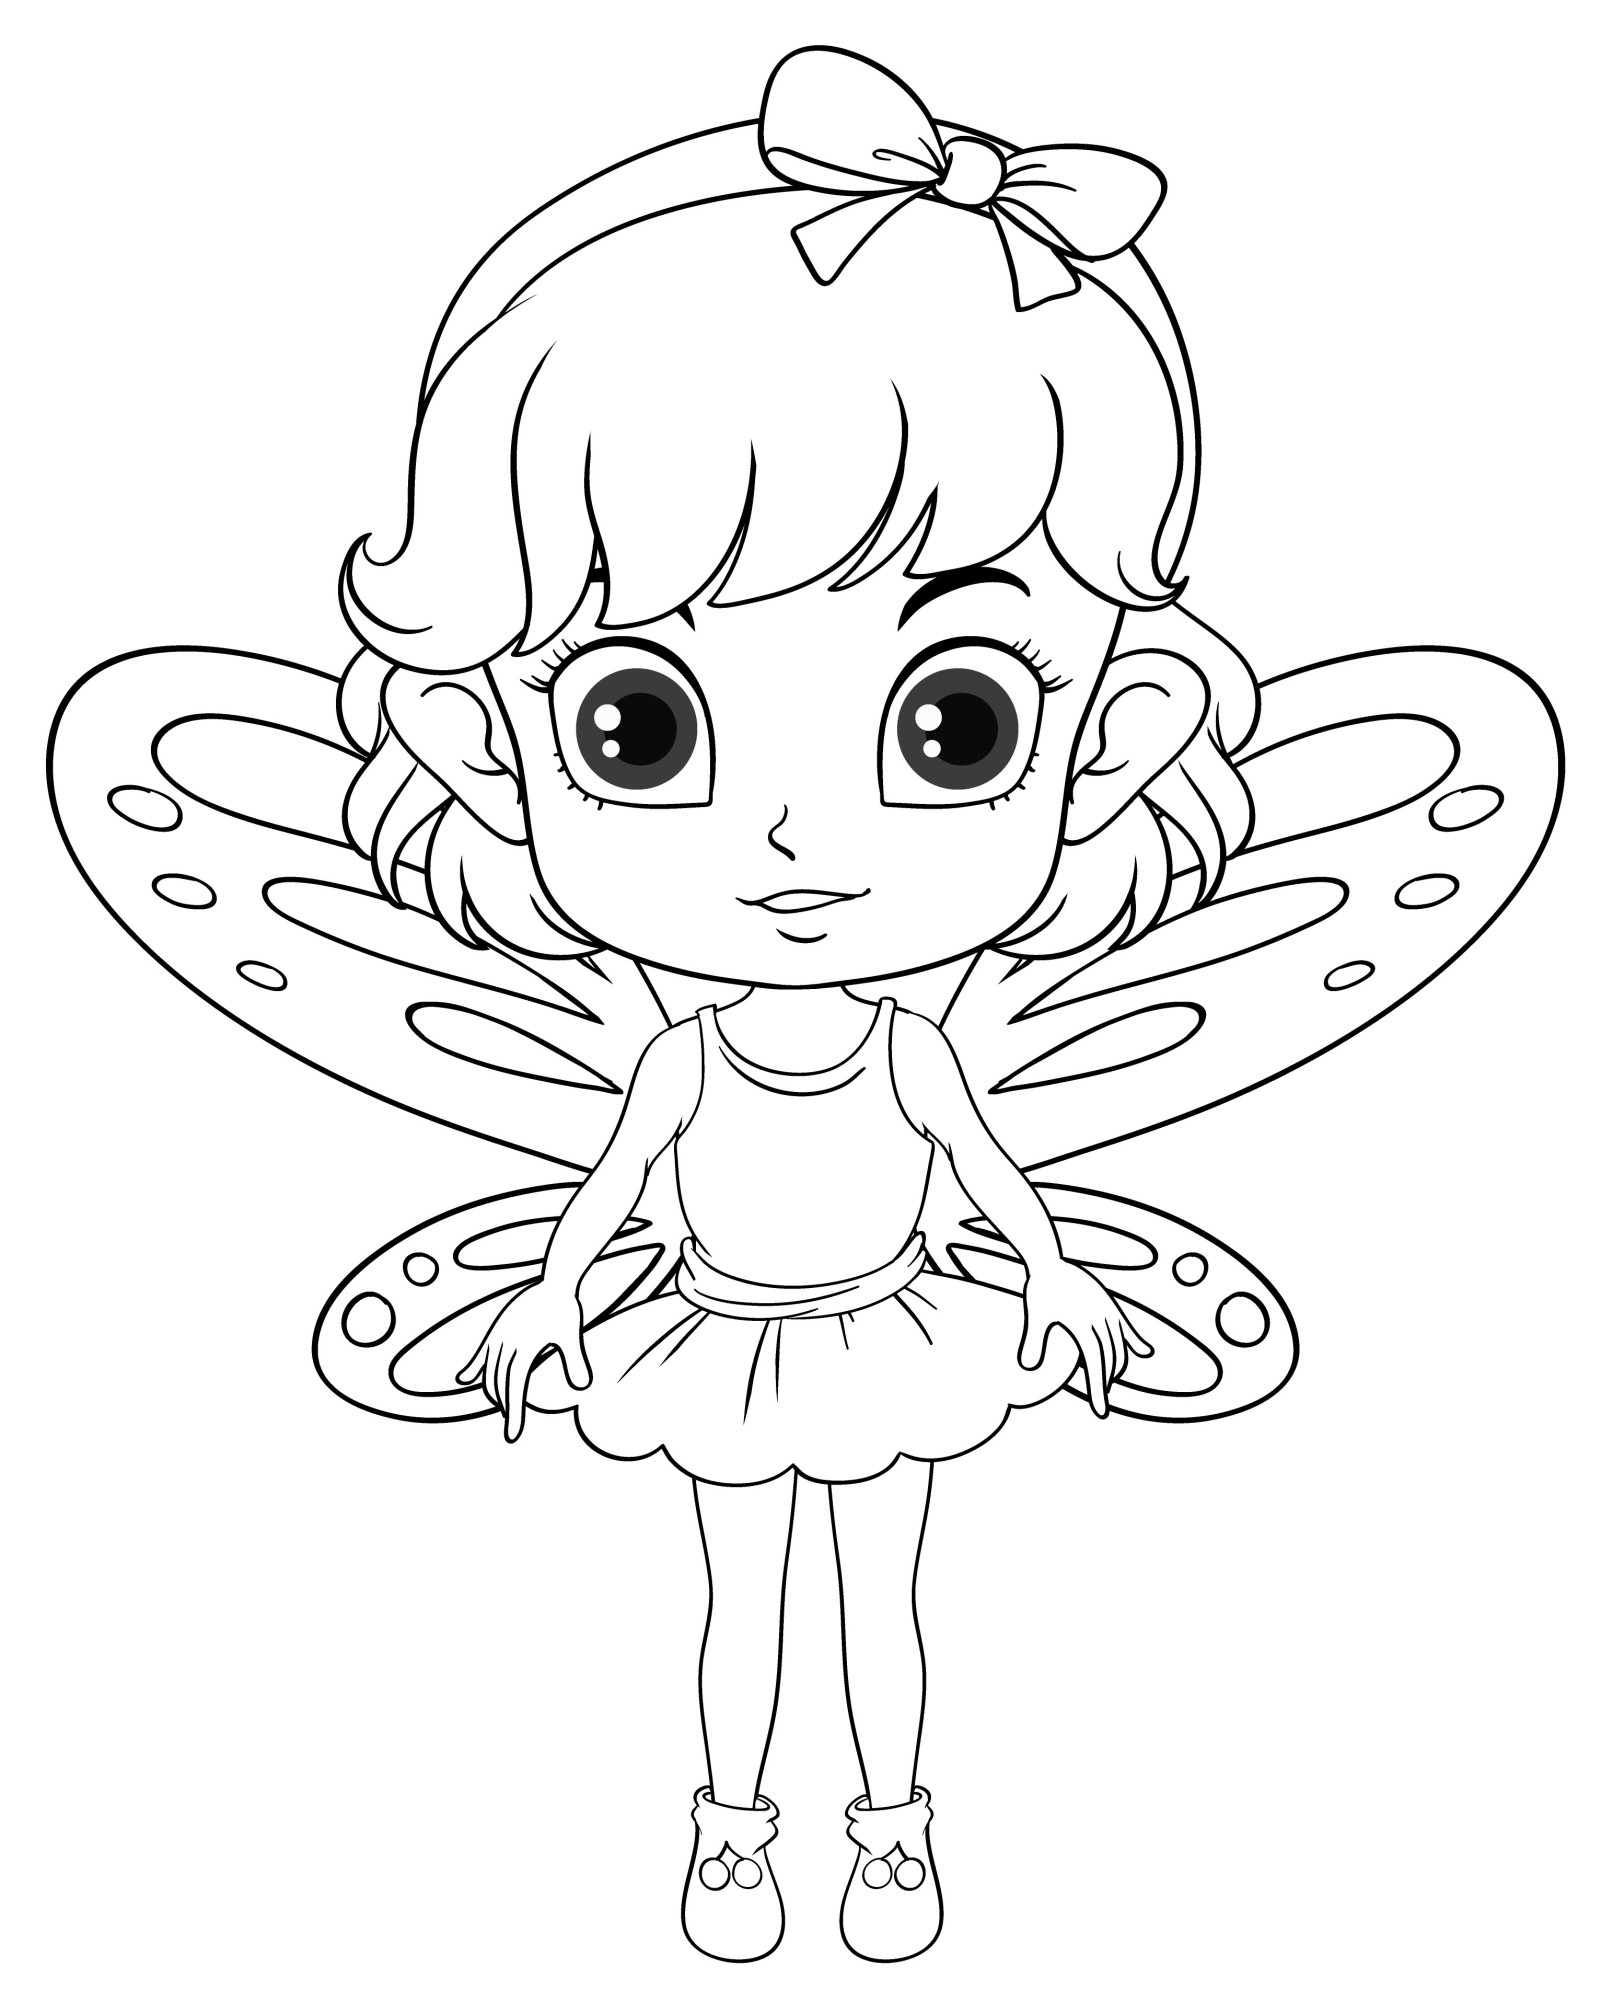 Раскраска для детей: девочка в костюме бабочки